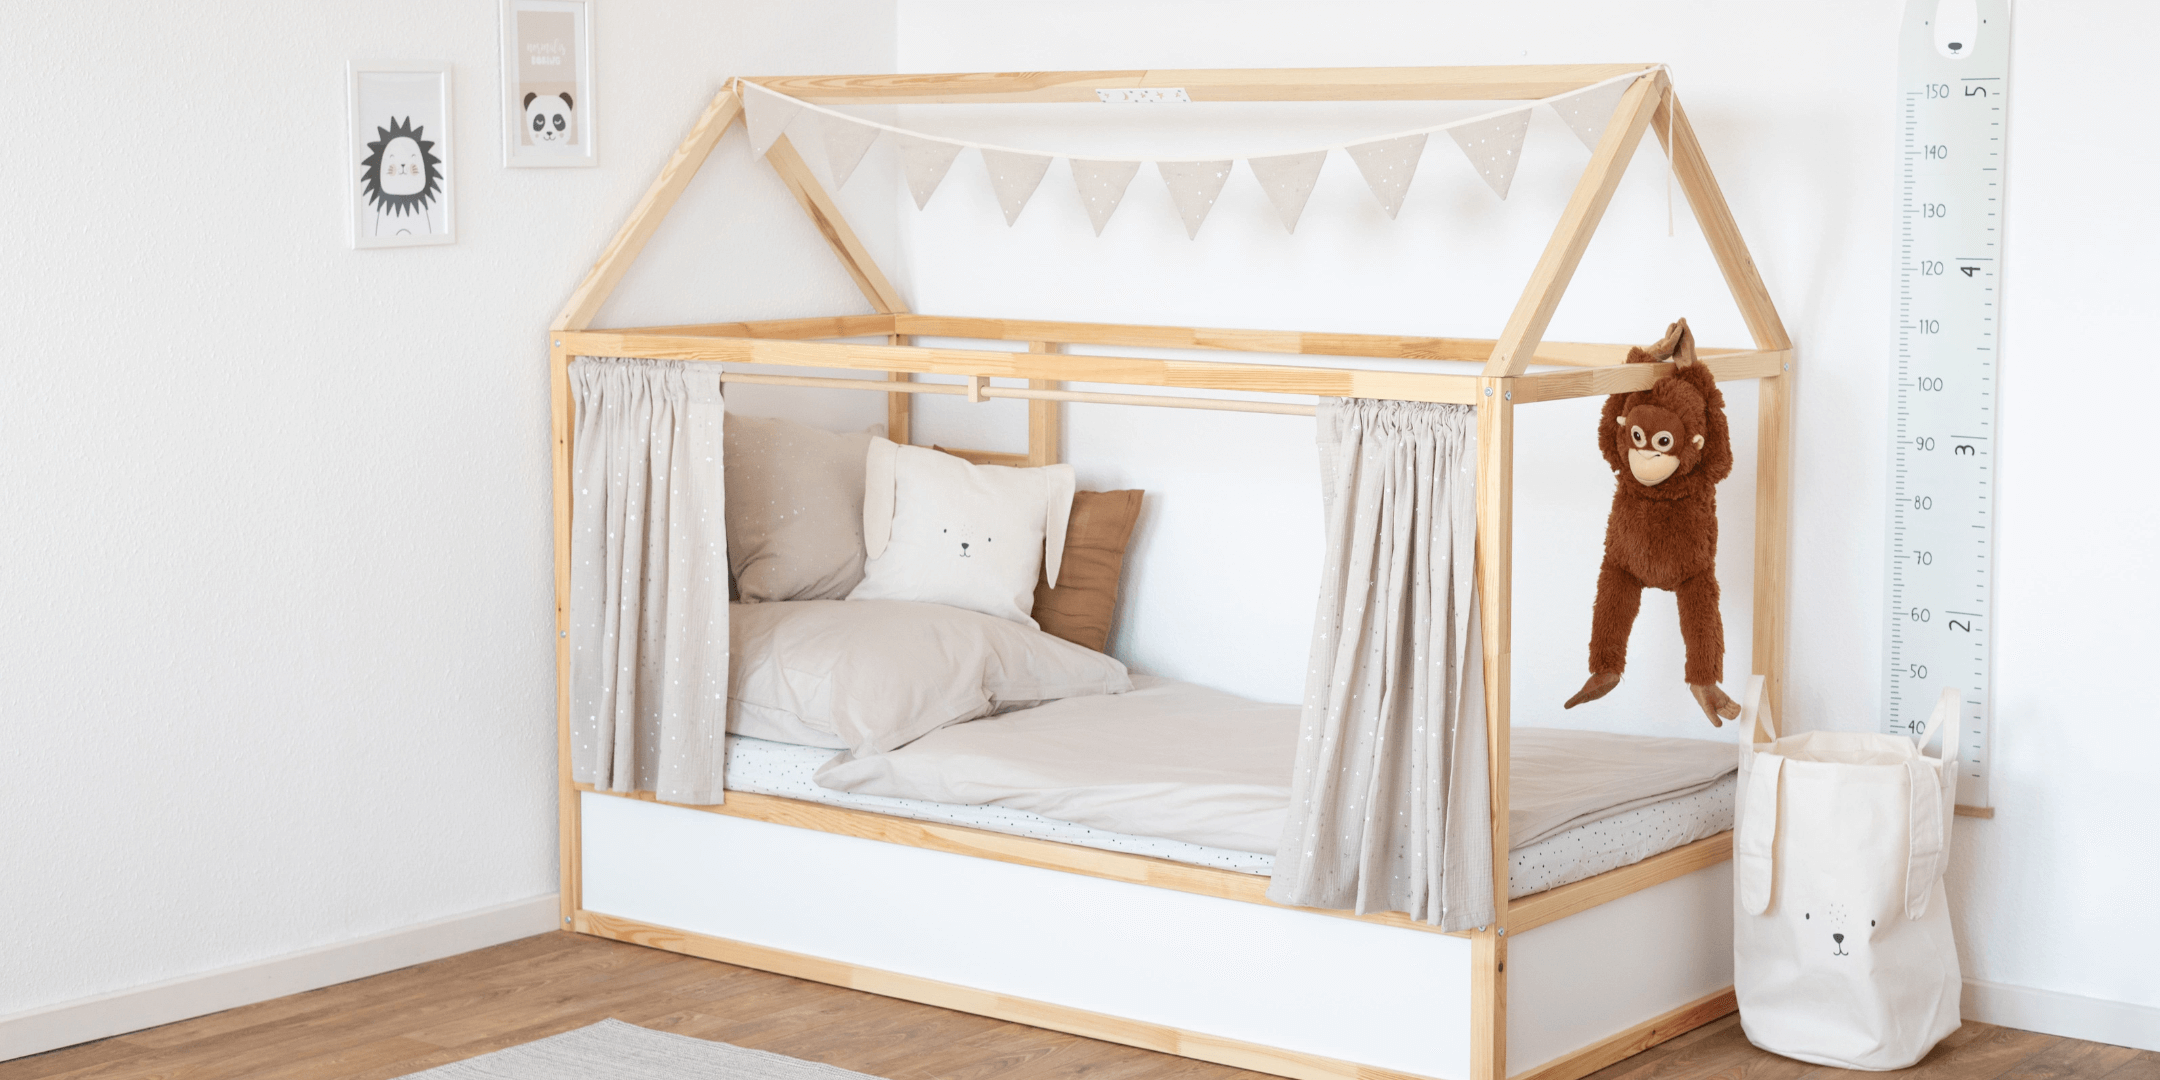 Ikea Hausbett mit Kura Vorhang aus Musselin Stoff in Taupe